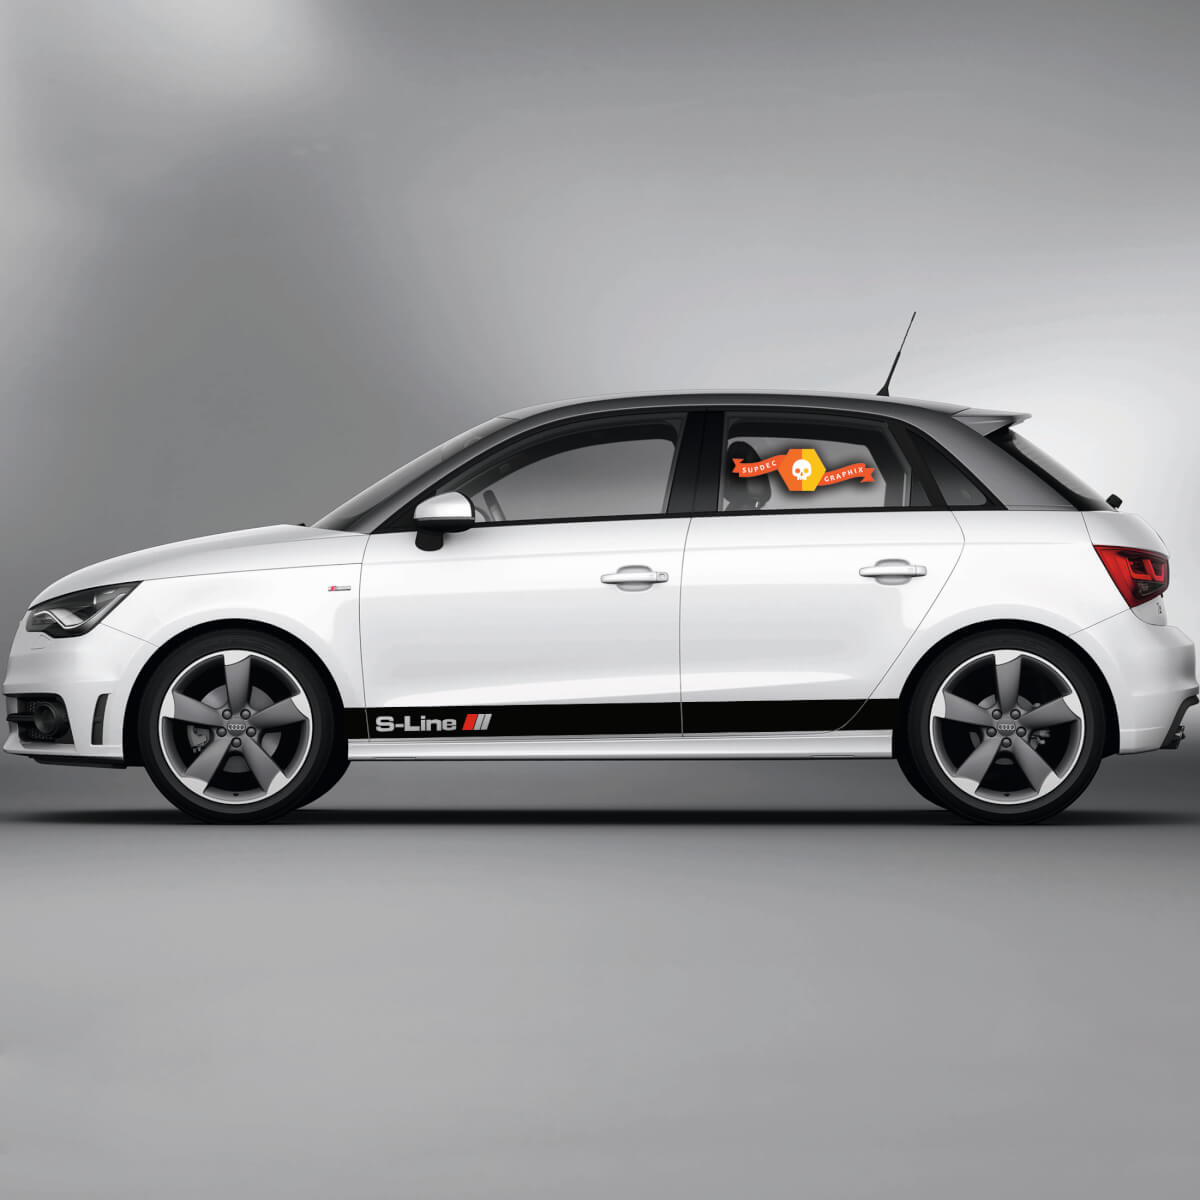 2x Decalcomanie in vinile Adesivi grafici Audi A1 Rocker Panel Auto Racing Stripes S-Line 2022